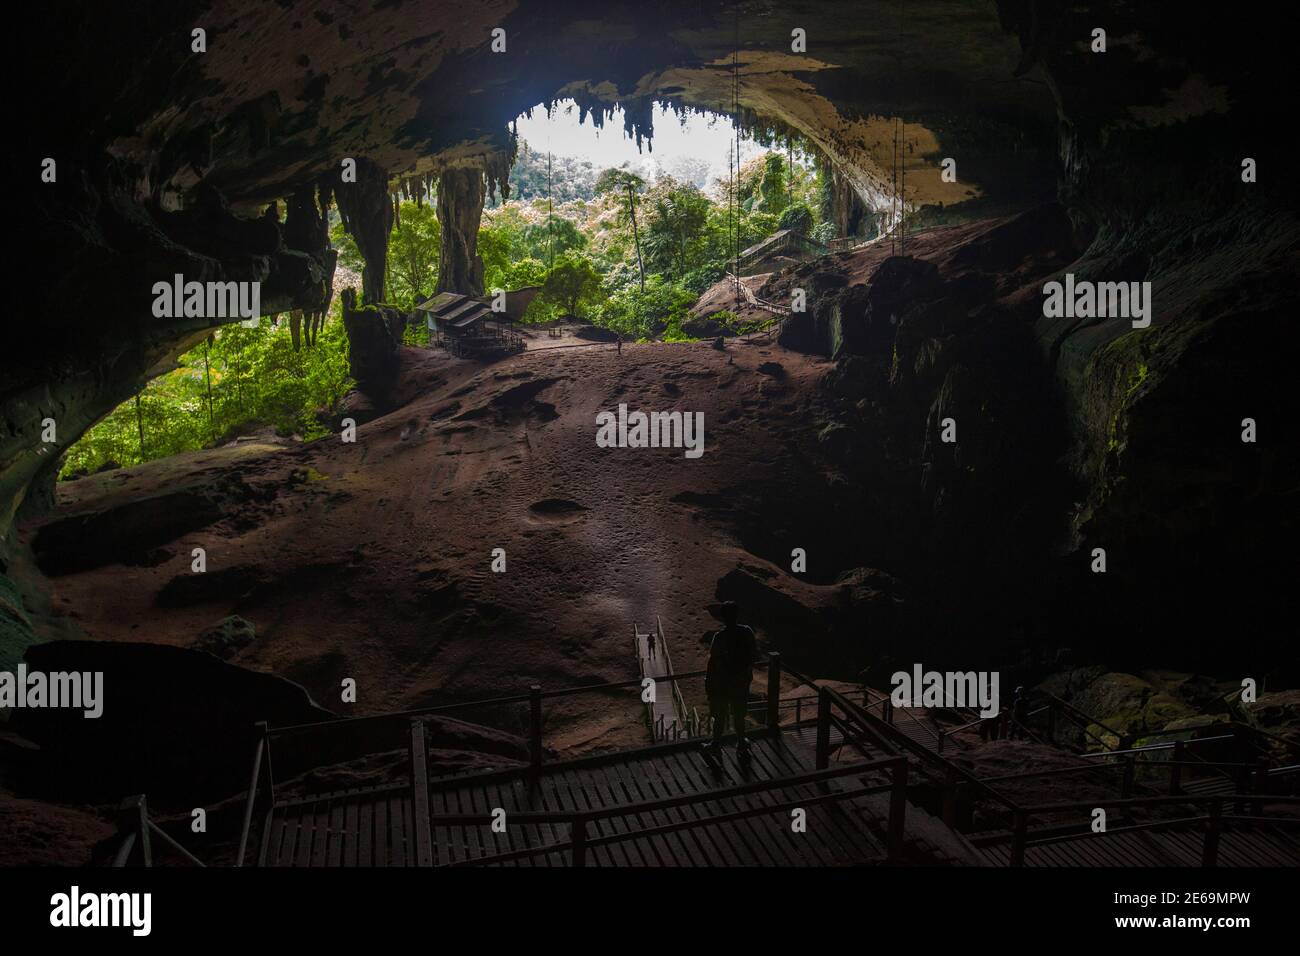 Los turistas ven la entrada principal de la Gran Cueva de Niah en el Parque Nacional de Niah, en el estado malayo de Sarawak en la isla de Borneo, 29 de marzo de 2012. Las cuevas de NIAH contienen los restos más antiguos del Homo sapiens que se encuentran en Borneo, y cuenta con la entrada de la cueva de piedra caliza más grande del mundo, así como pinturas rupestres antiguas. Estudios publicados recientemente han demostrado evidencia de la primera actividad humana en las cuevas de Niah de California. 46,000 a aprox. hace 34,000 años. Foto tomada el 29 de marzo de 2012. REUTERS/David Loh (MALASIA - Tags: MEDIO AMBIENTE SOCIEDAD VIAJES) Foto de stock